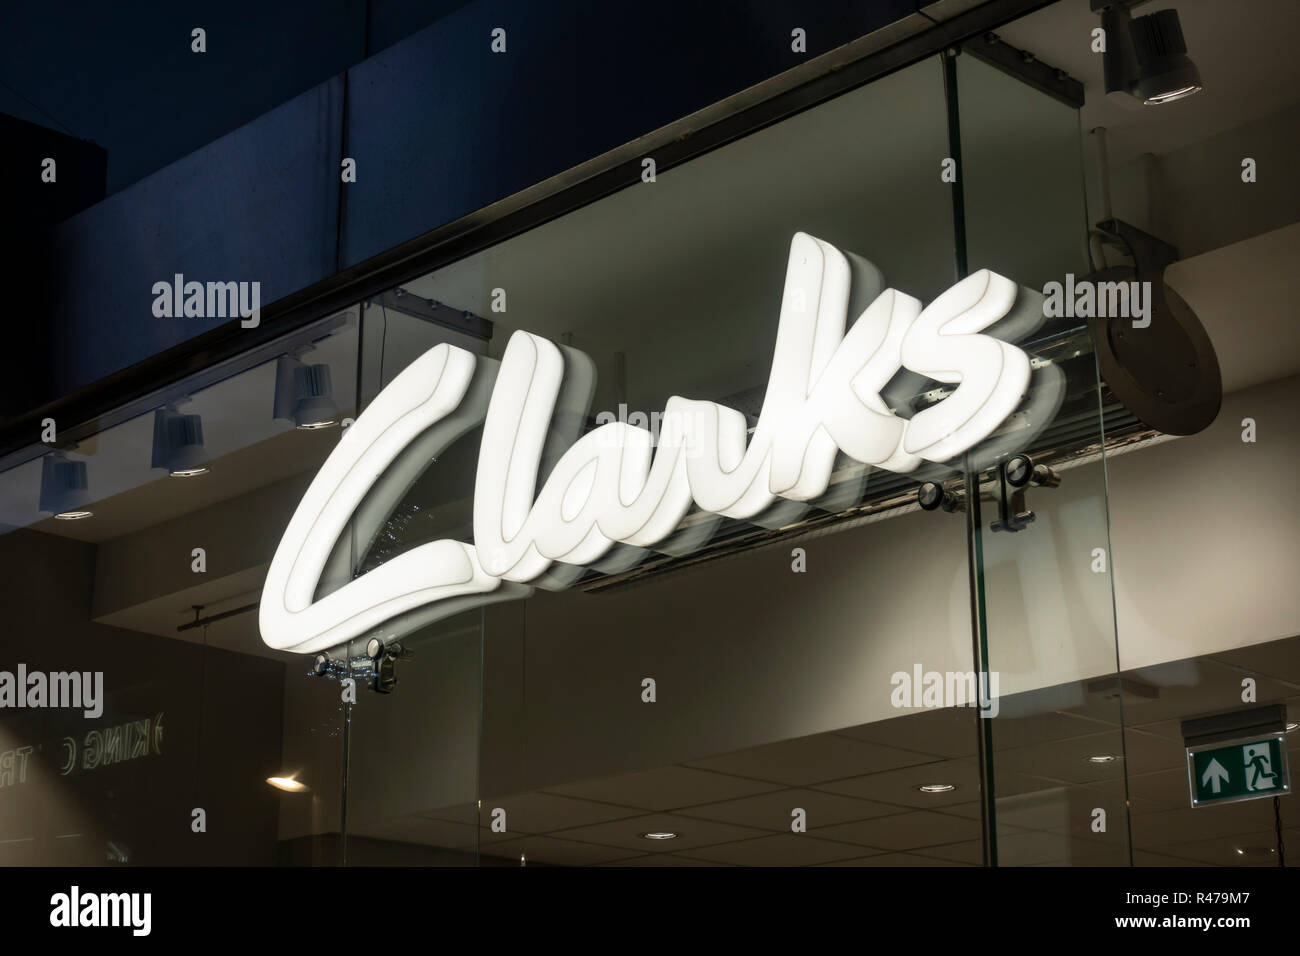 Magasin de chaussures Clarks signe à Bury, Lancashire Banque D'Images